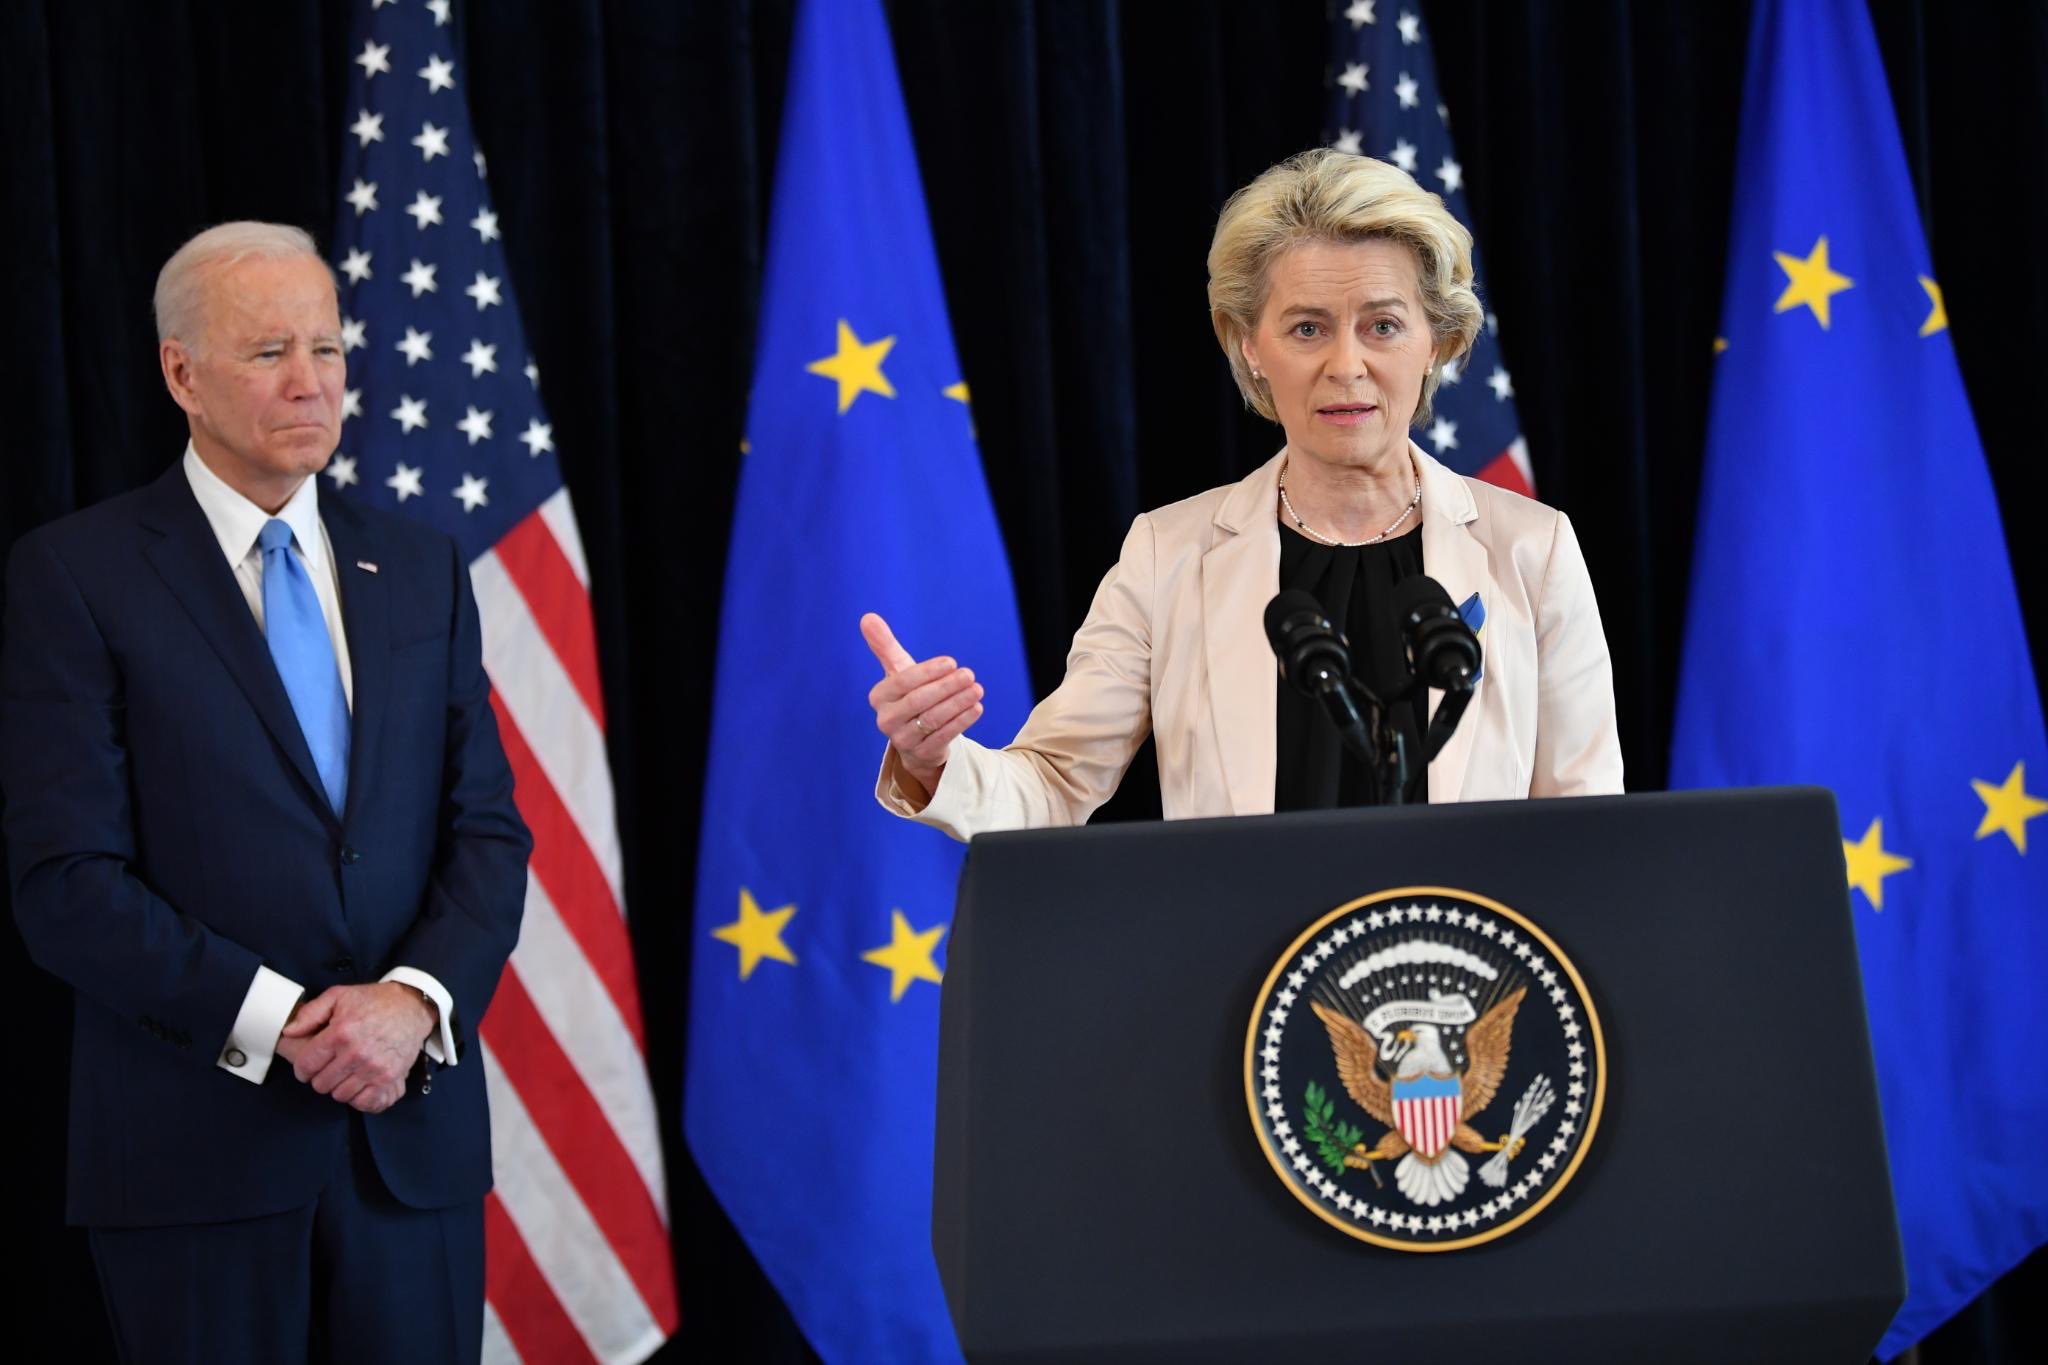 EC President Ursula von der Leyen and U.S. President Joe Biden